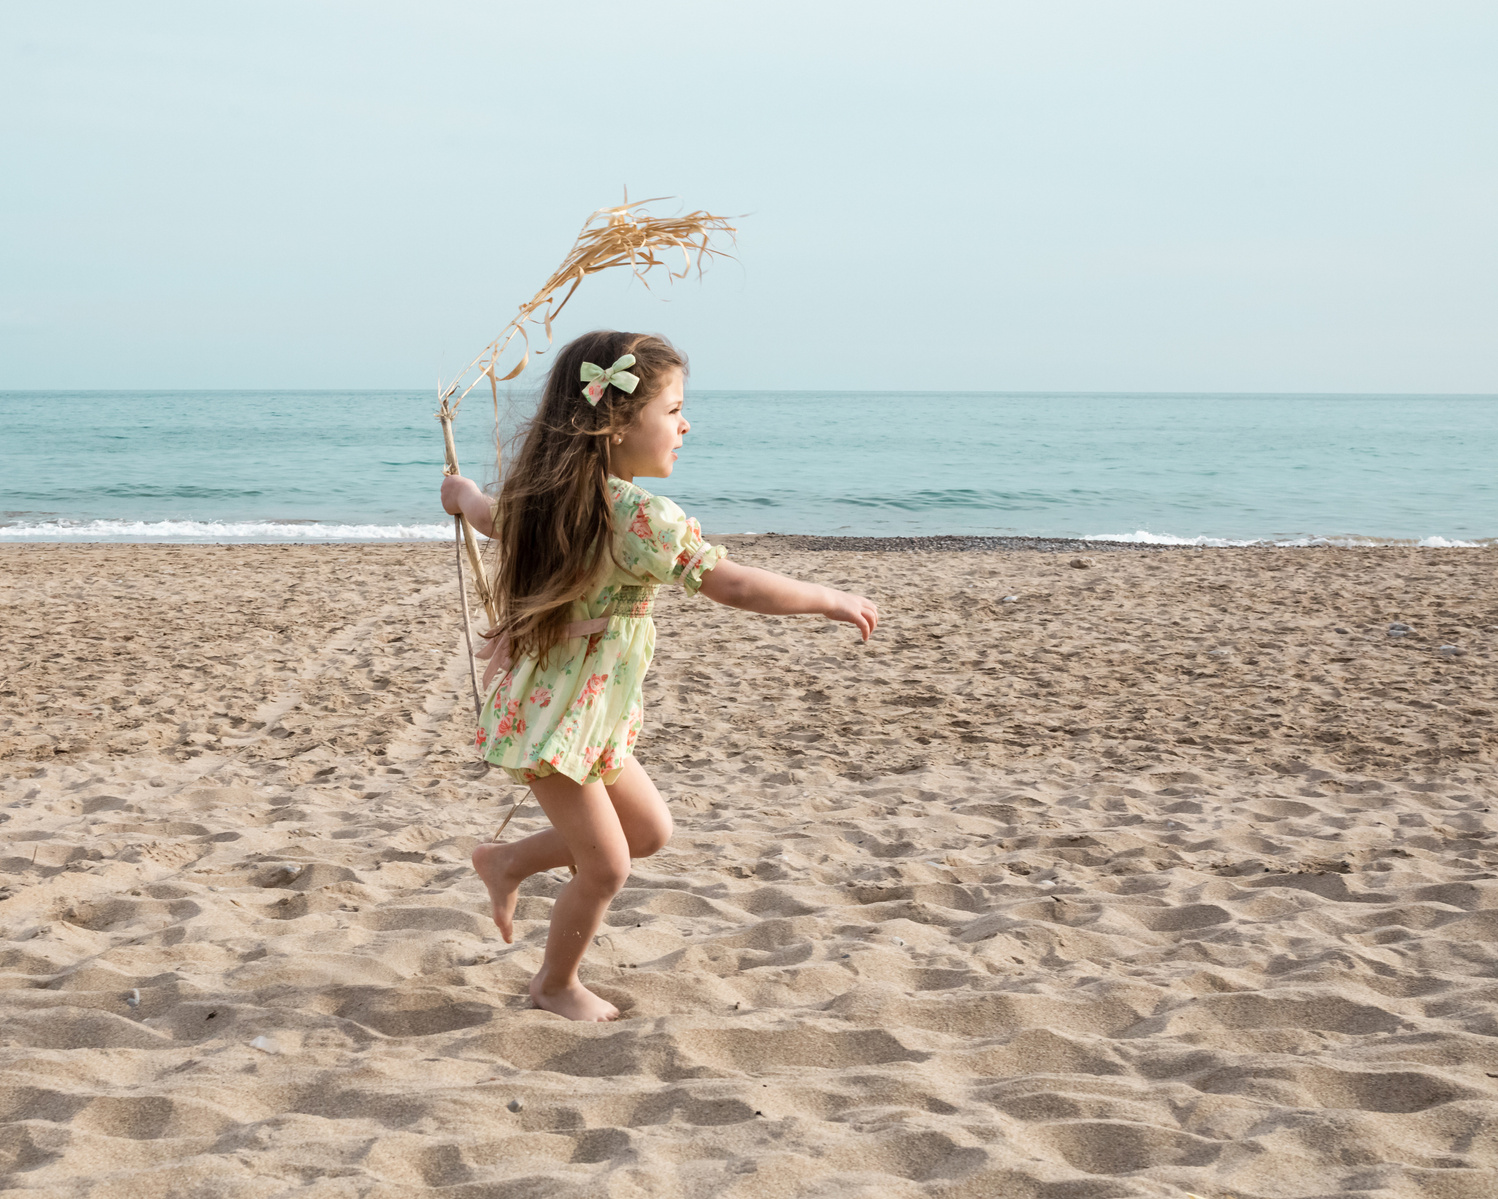 niña corriendo y jugando en la playa las casetas del Garraf en barcelona, españa